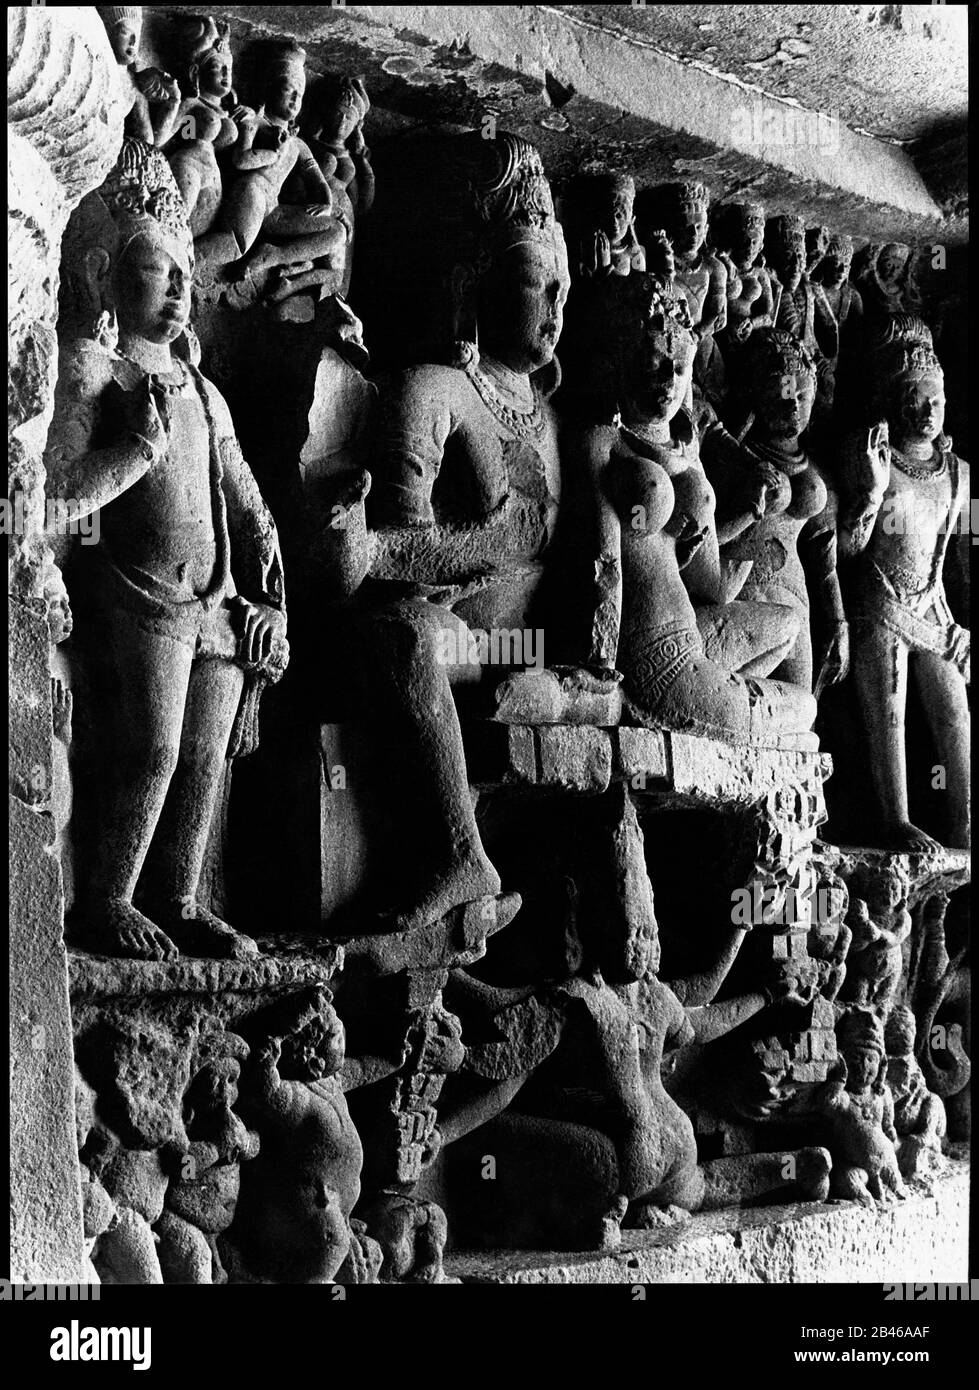 Shiva Parvati, grotte d'Ellora, site classé au patrimoine mondial de l'UNESCO, Aurangabad, Maharashtra, Inde, Asie, 1977, ancienne image ancienne des années 1900 Banque D'Images